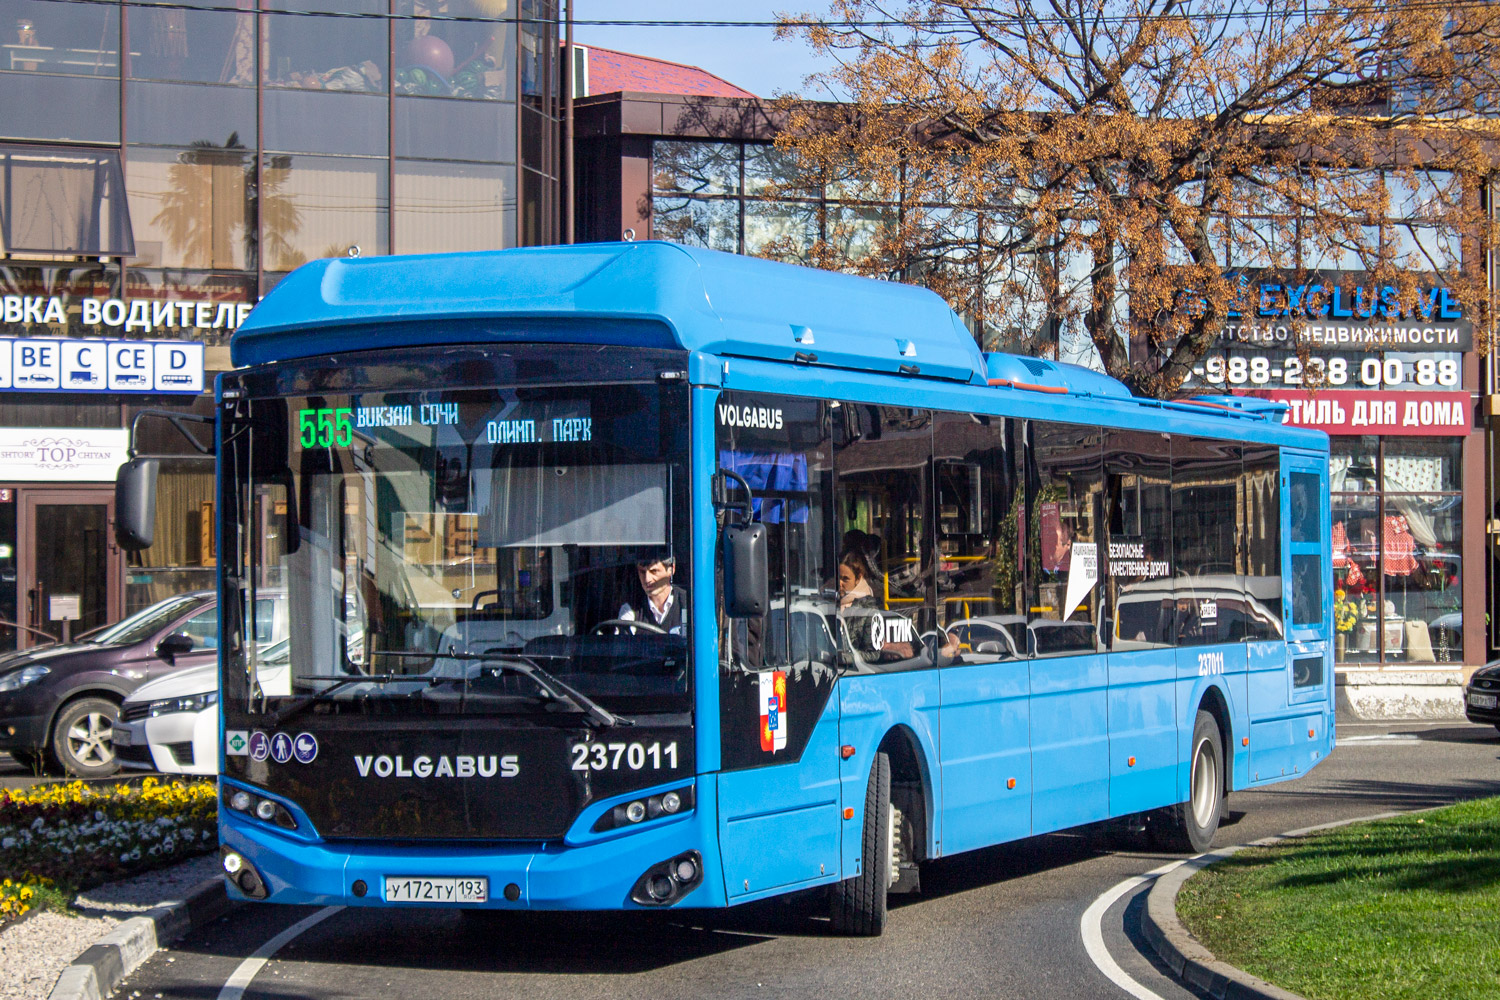 Krasnodar region, Volgabus-5270.G4 (CNG) Nr. 237011